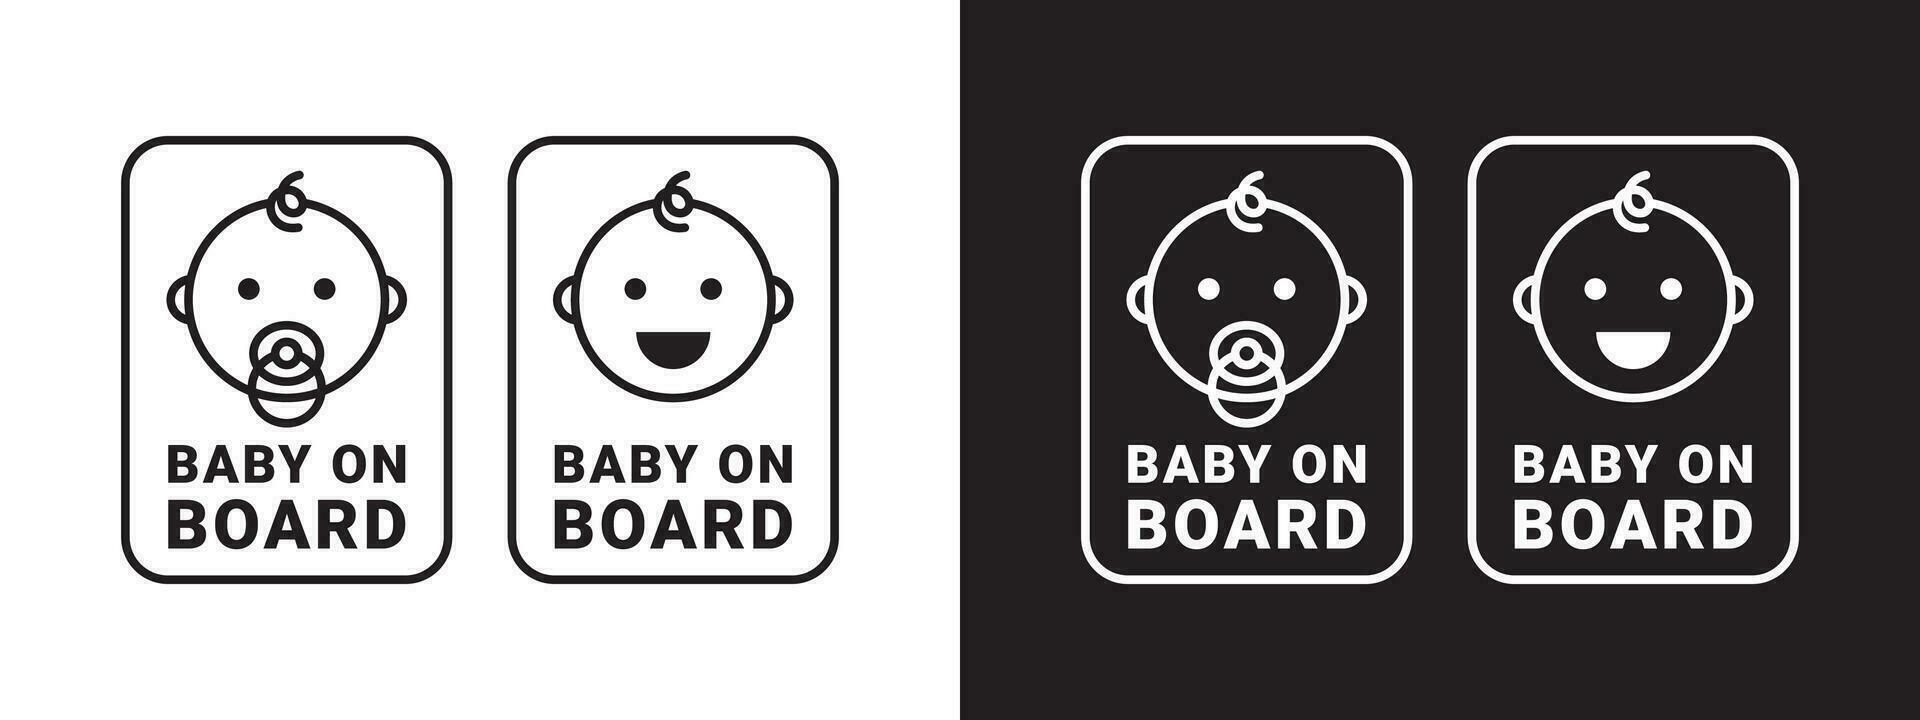 bambino su tavola distintivo. bambino su tavola cartello icona. bambino sicurezza etichetta avvertimento emblema. vettore scalabile grafica